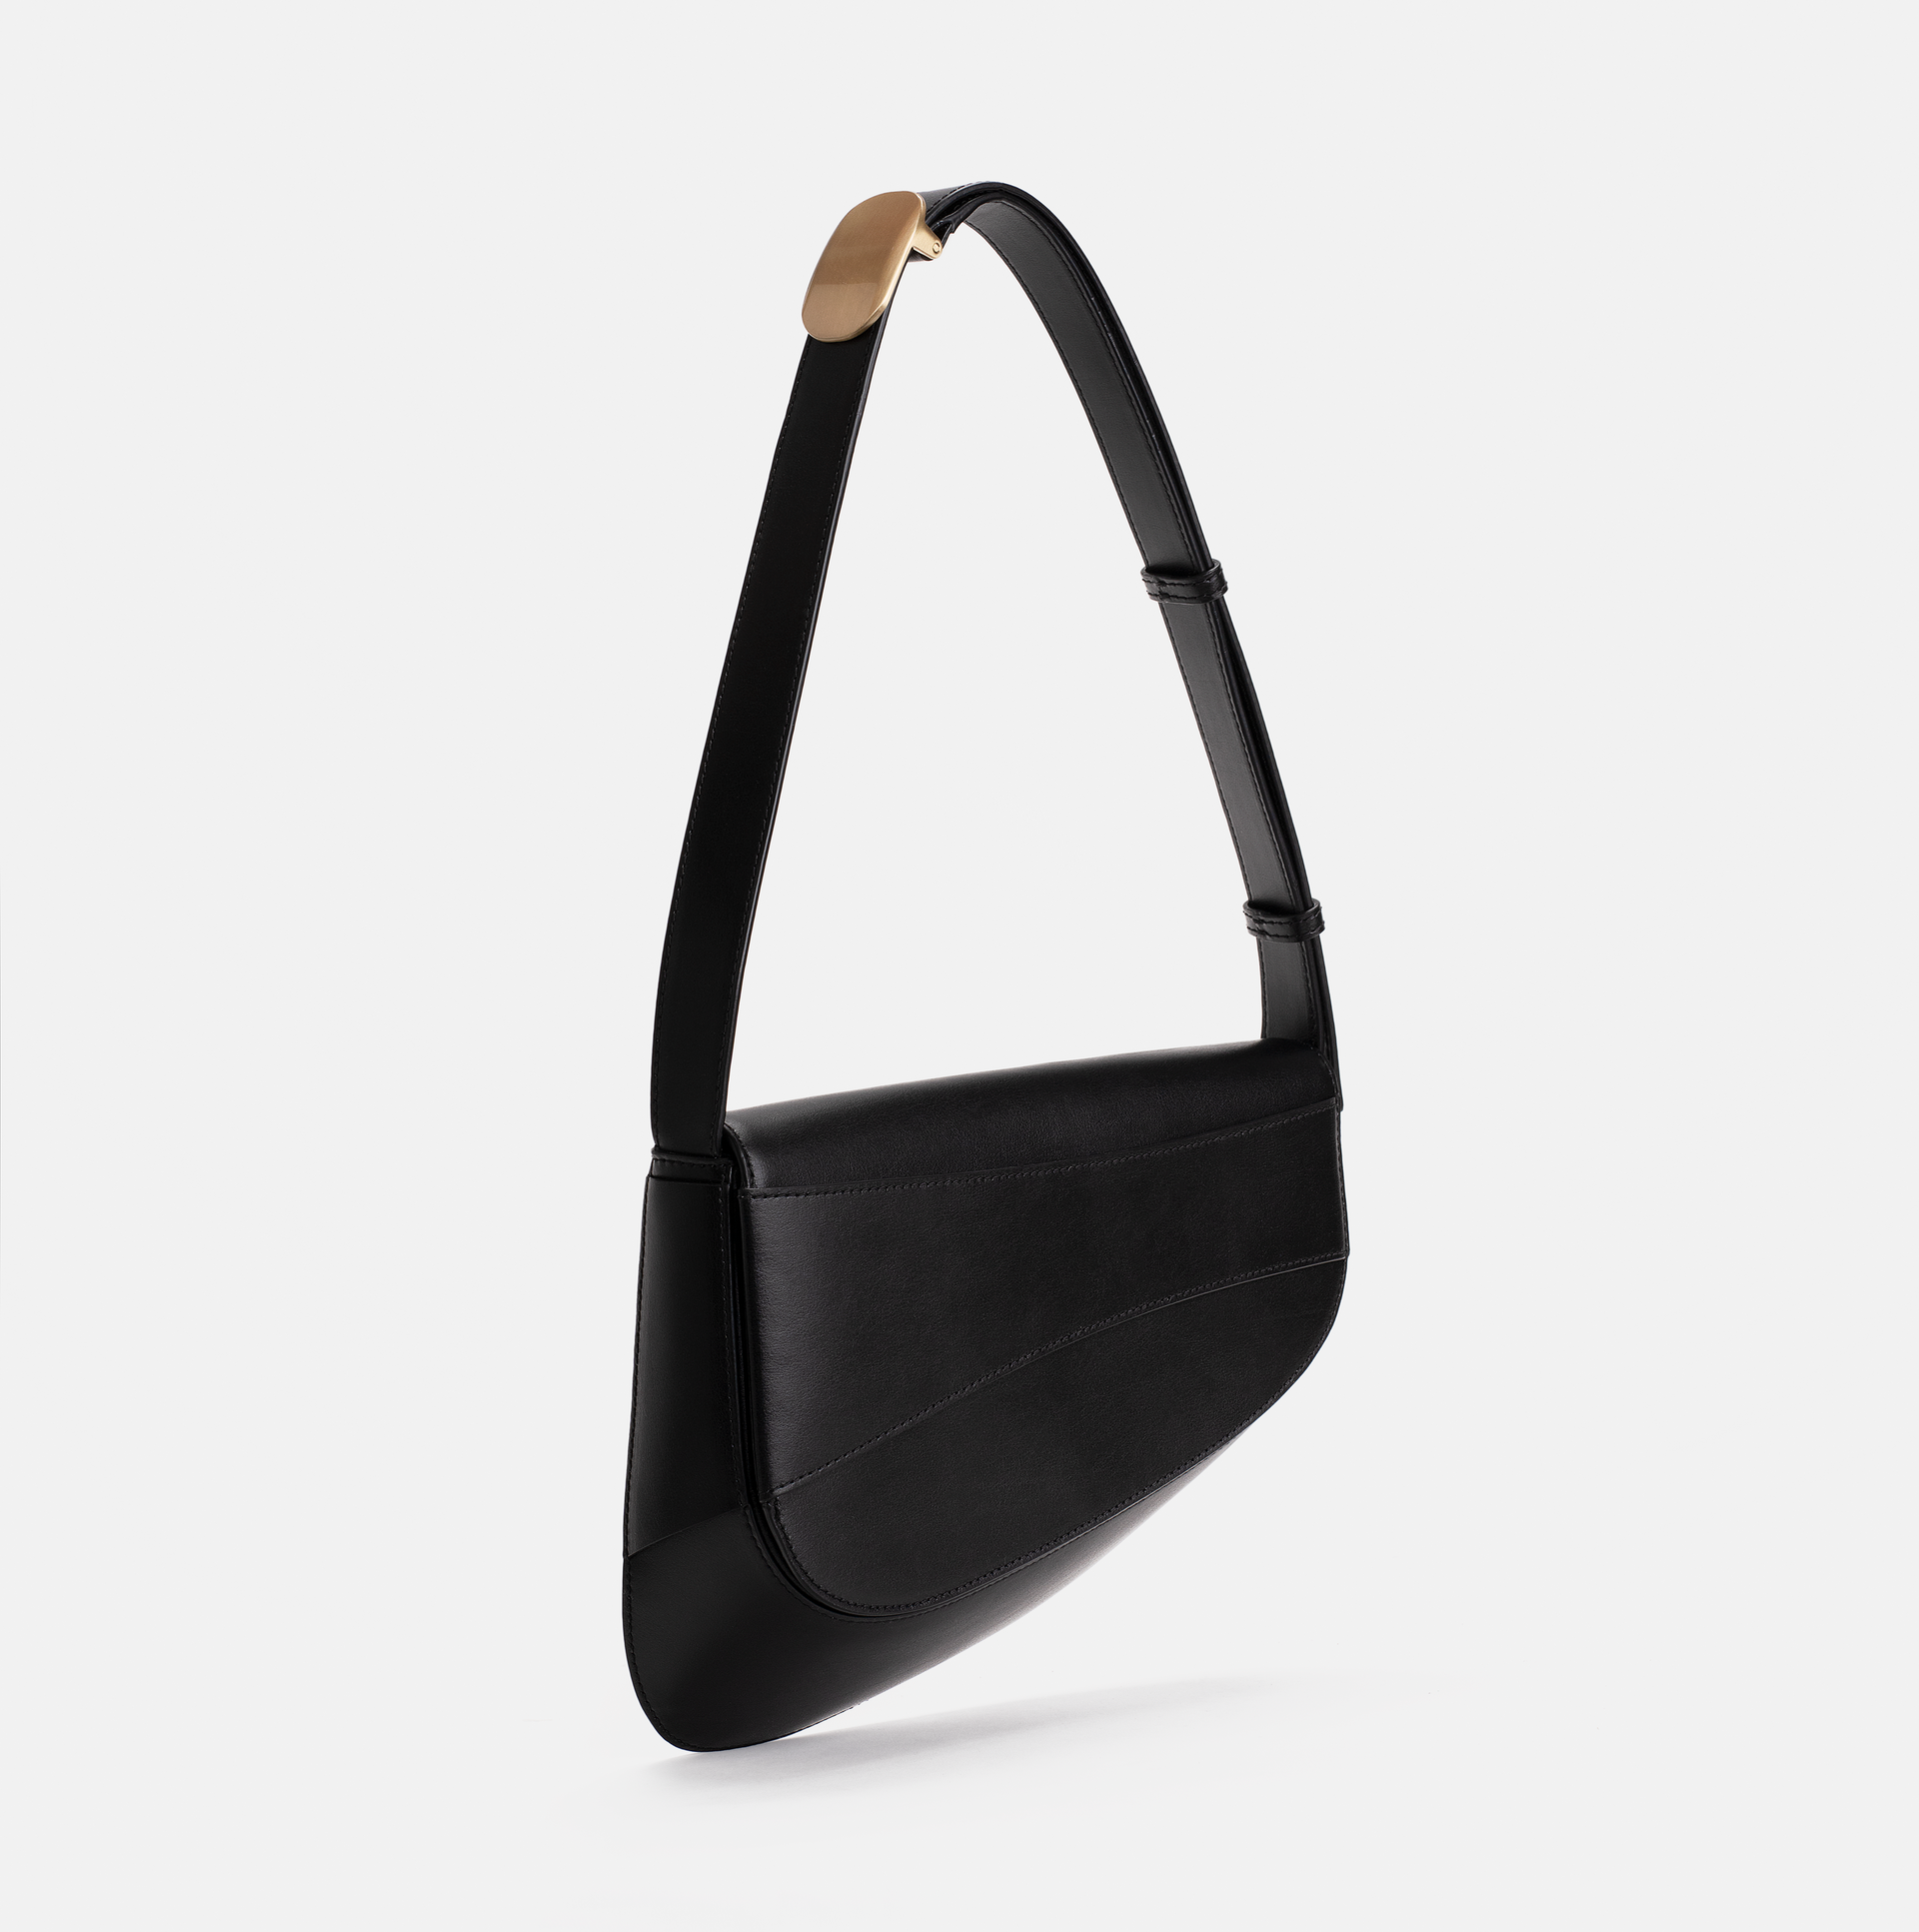 Marianne smooth leather shoulder bag in black